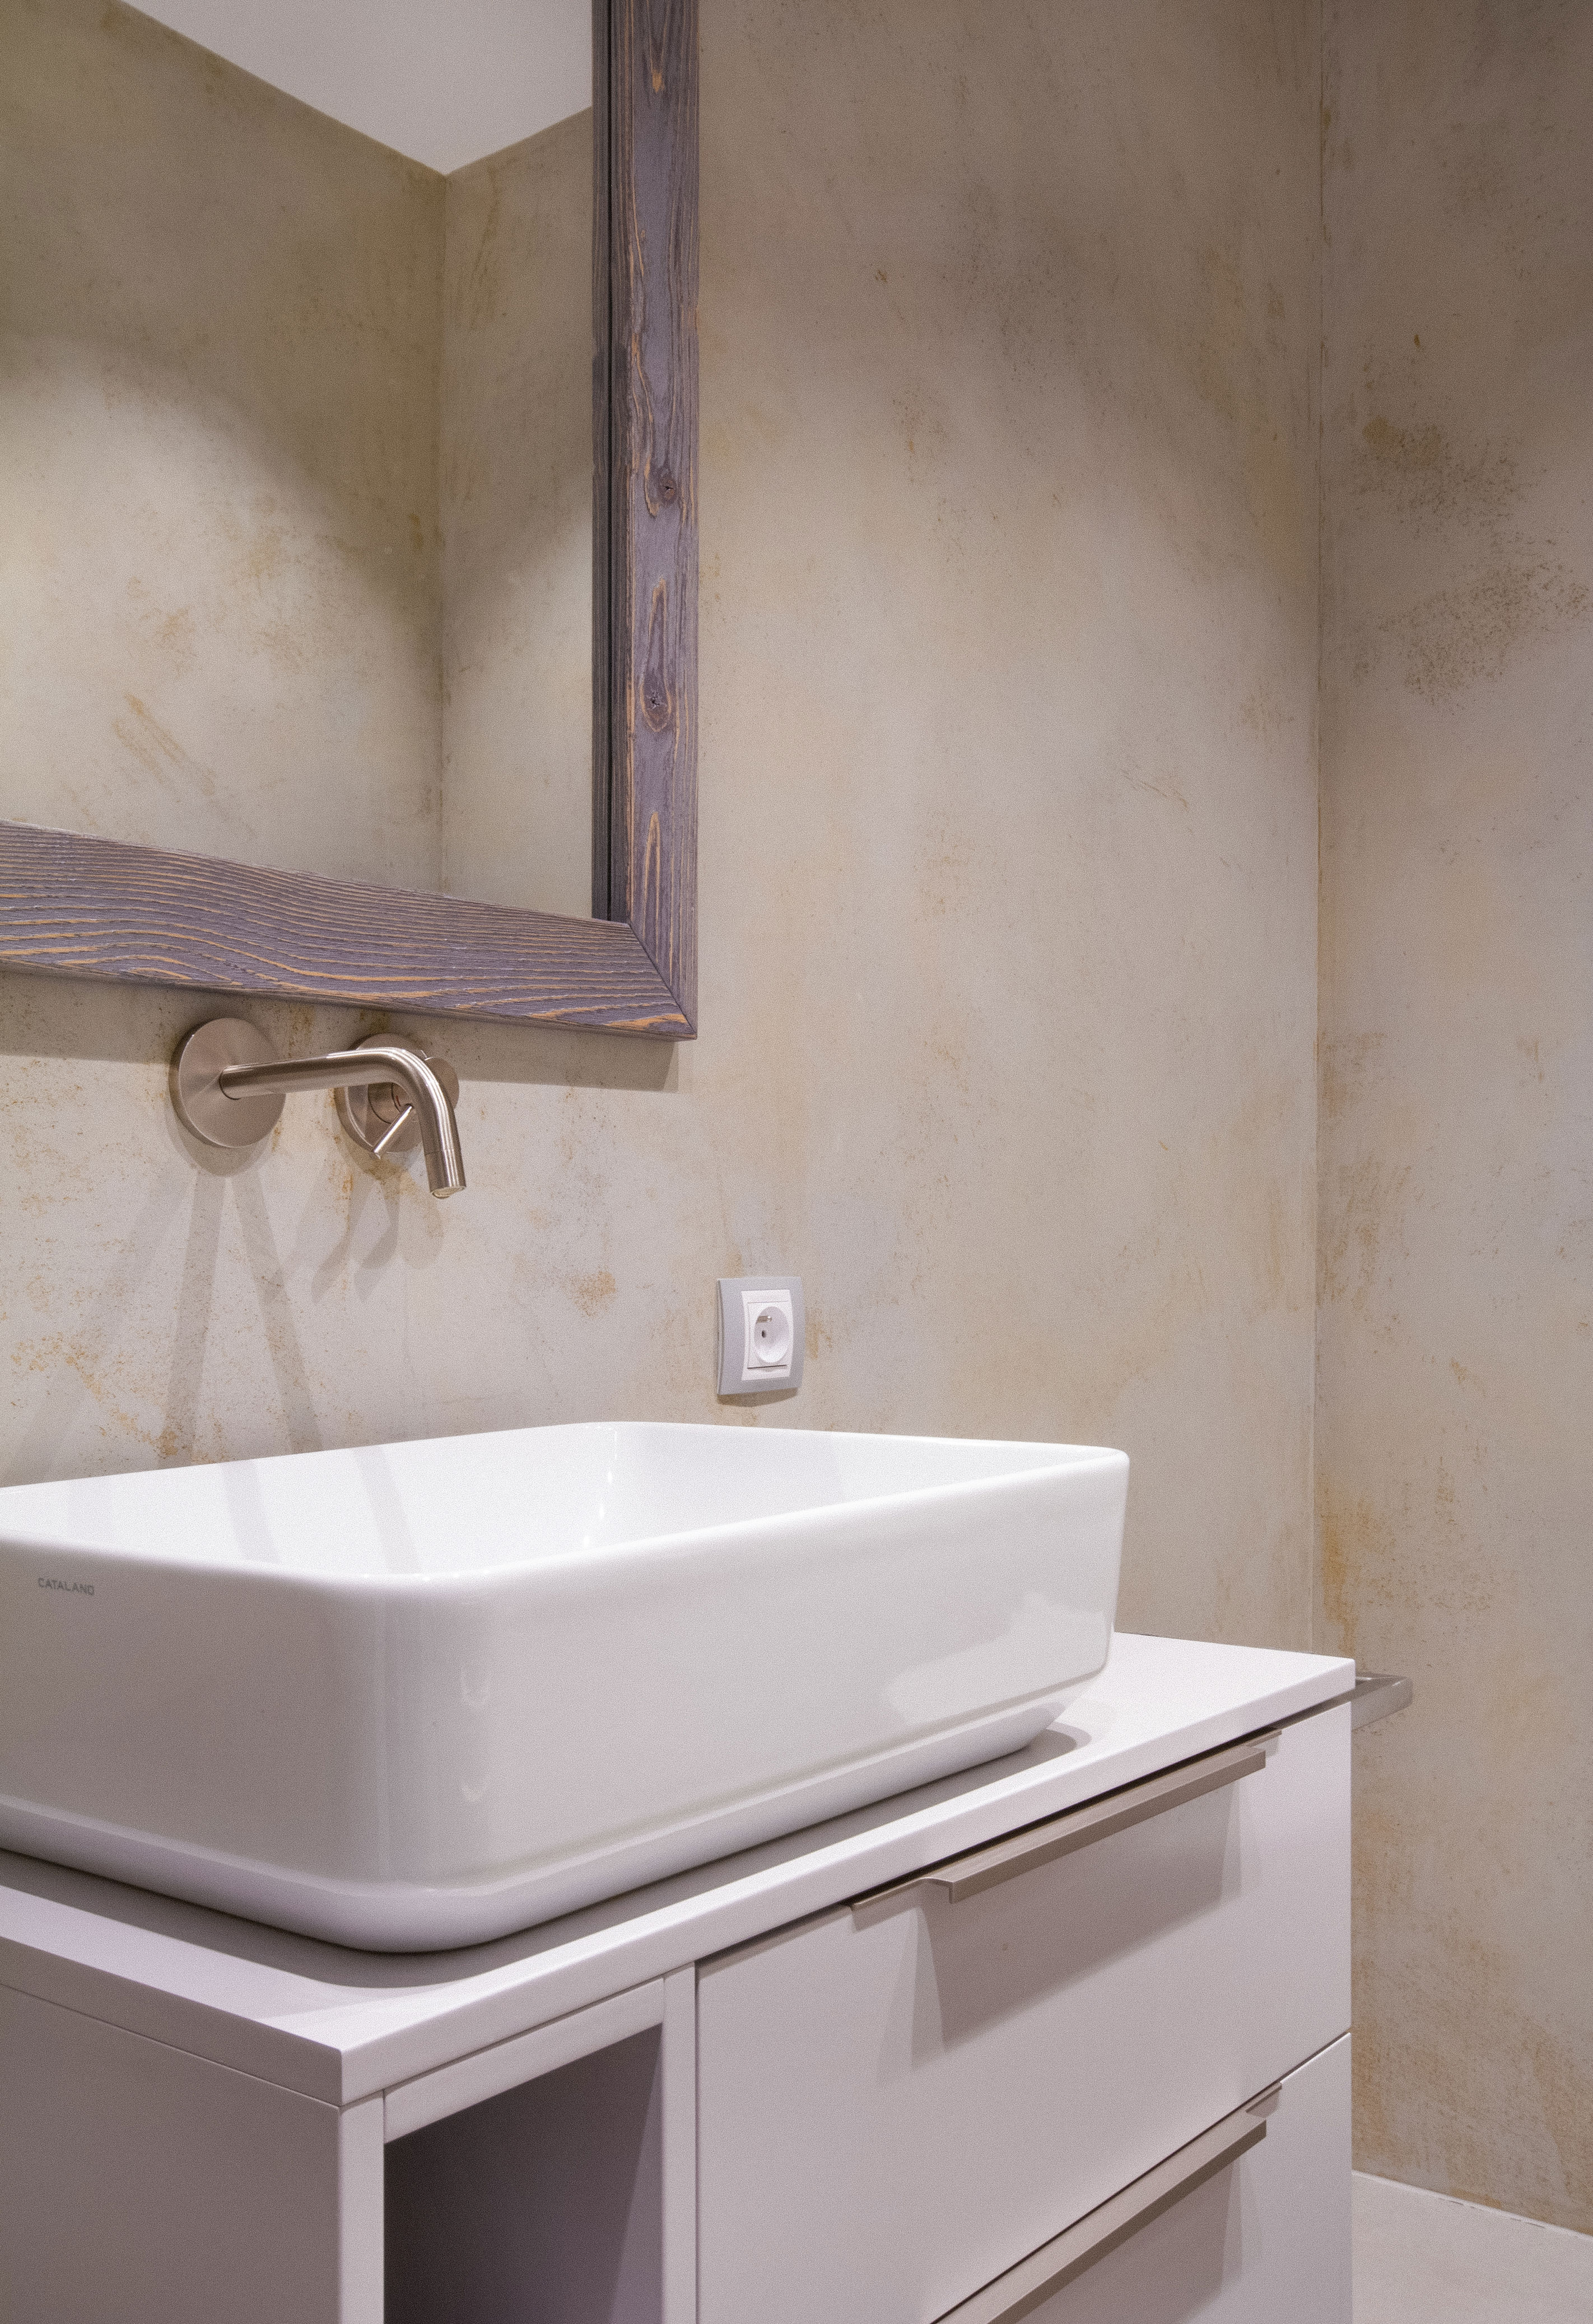 beton v koupelně: prvek, který rozhodně nepatří jen industriálnímu stylu